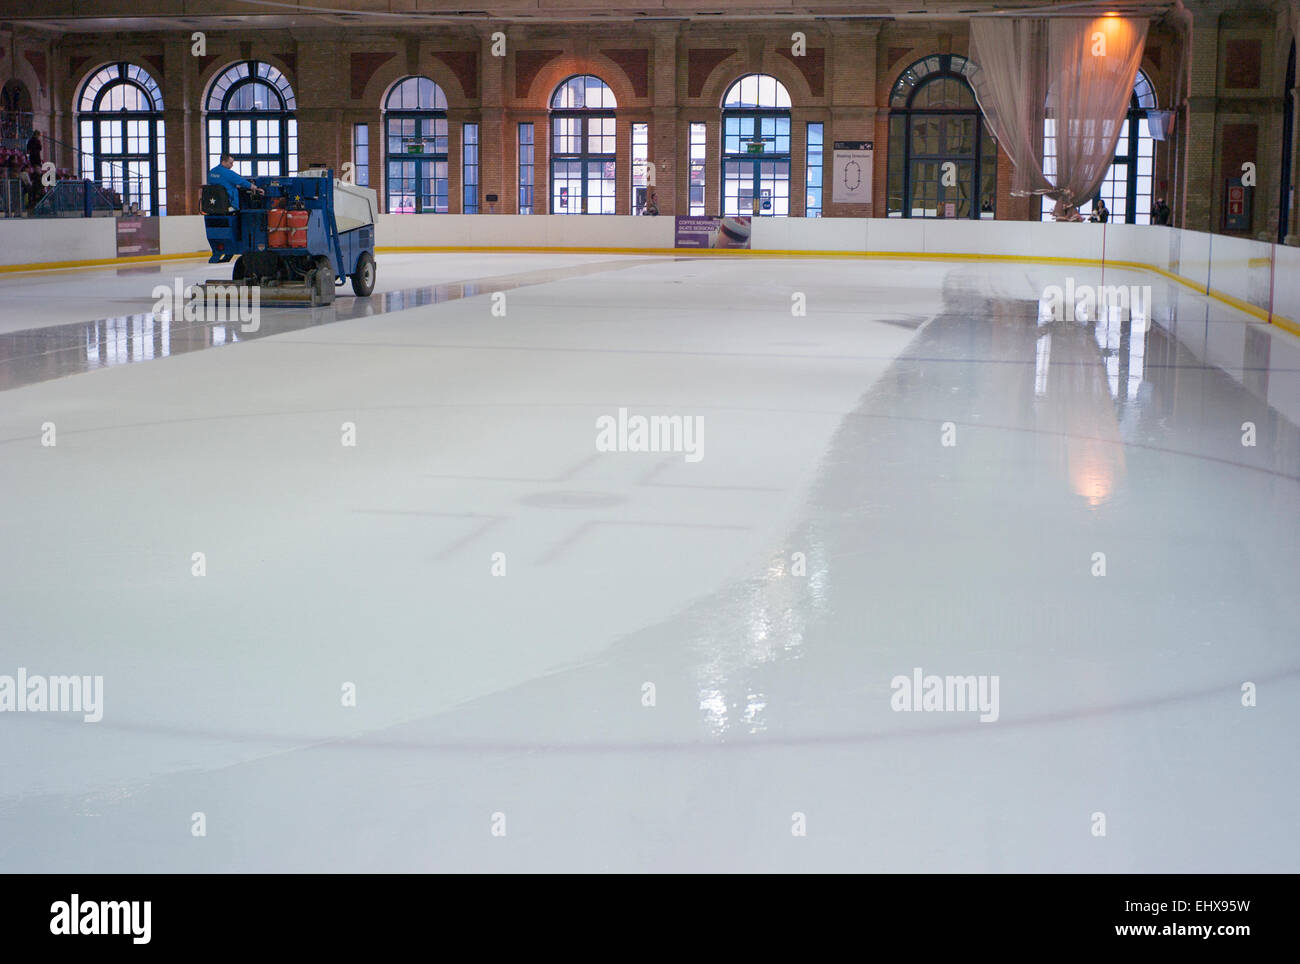 Rettificare la superficie di ghiaccio macchina a indoor Ice Rink a Alexandra Palace rinnovato architettura vittoriana Foto Stock